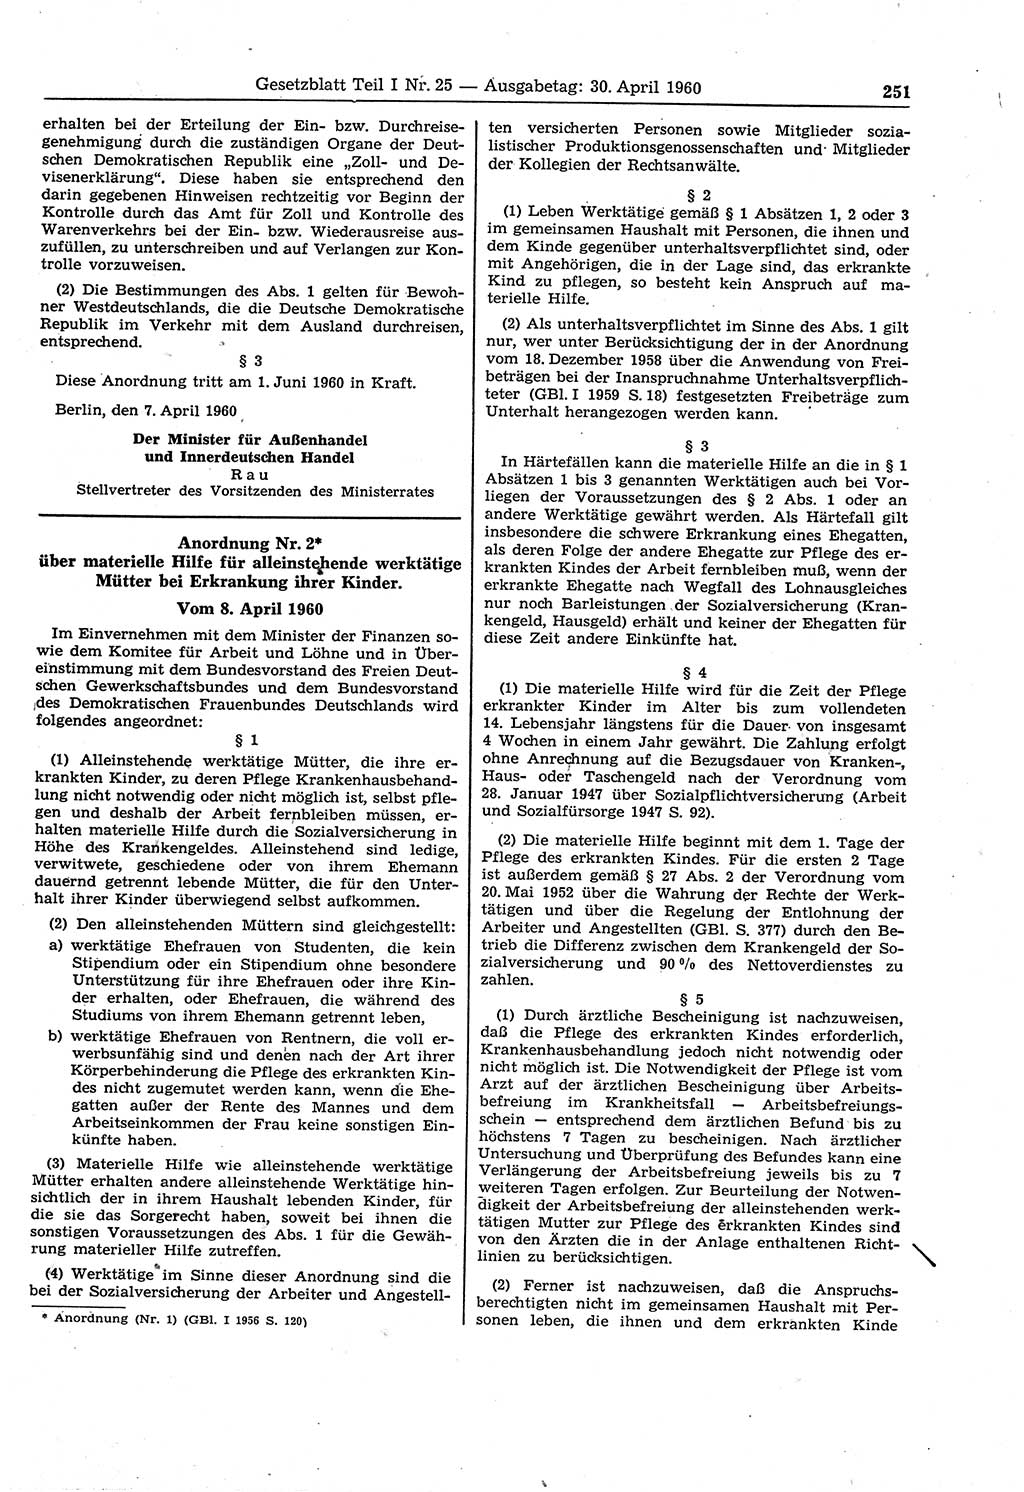 Gesetzblatt (GBl.) der Deutschen Demokratischen Republik (DDR) Teil Ⅰ 1960, Seite 251 (GBl. DDR Ⅰ 1960, S. 251)